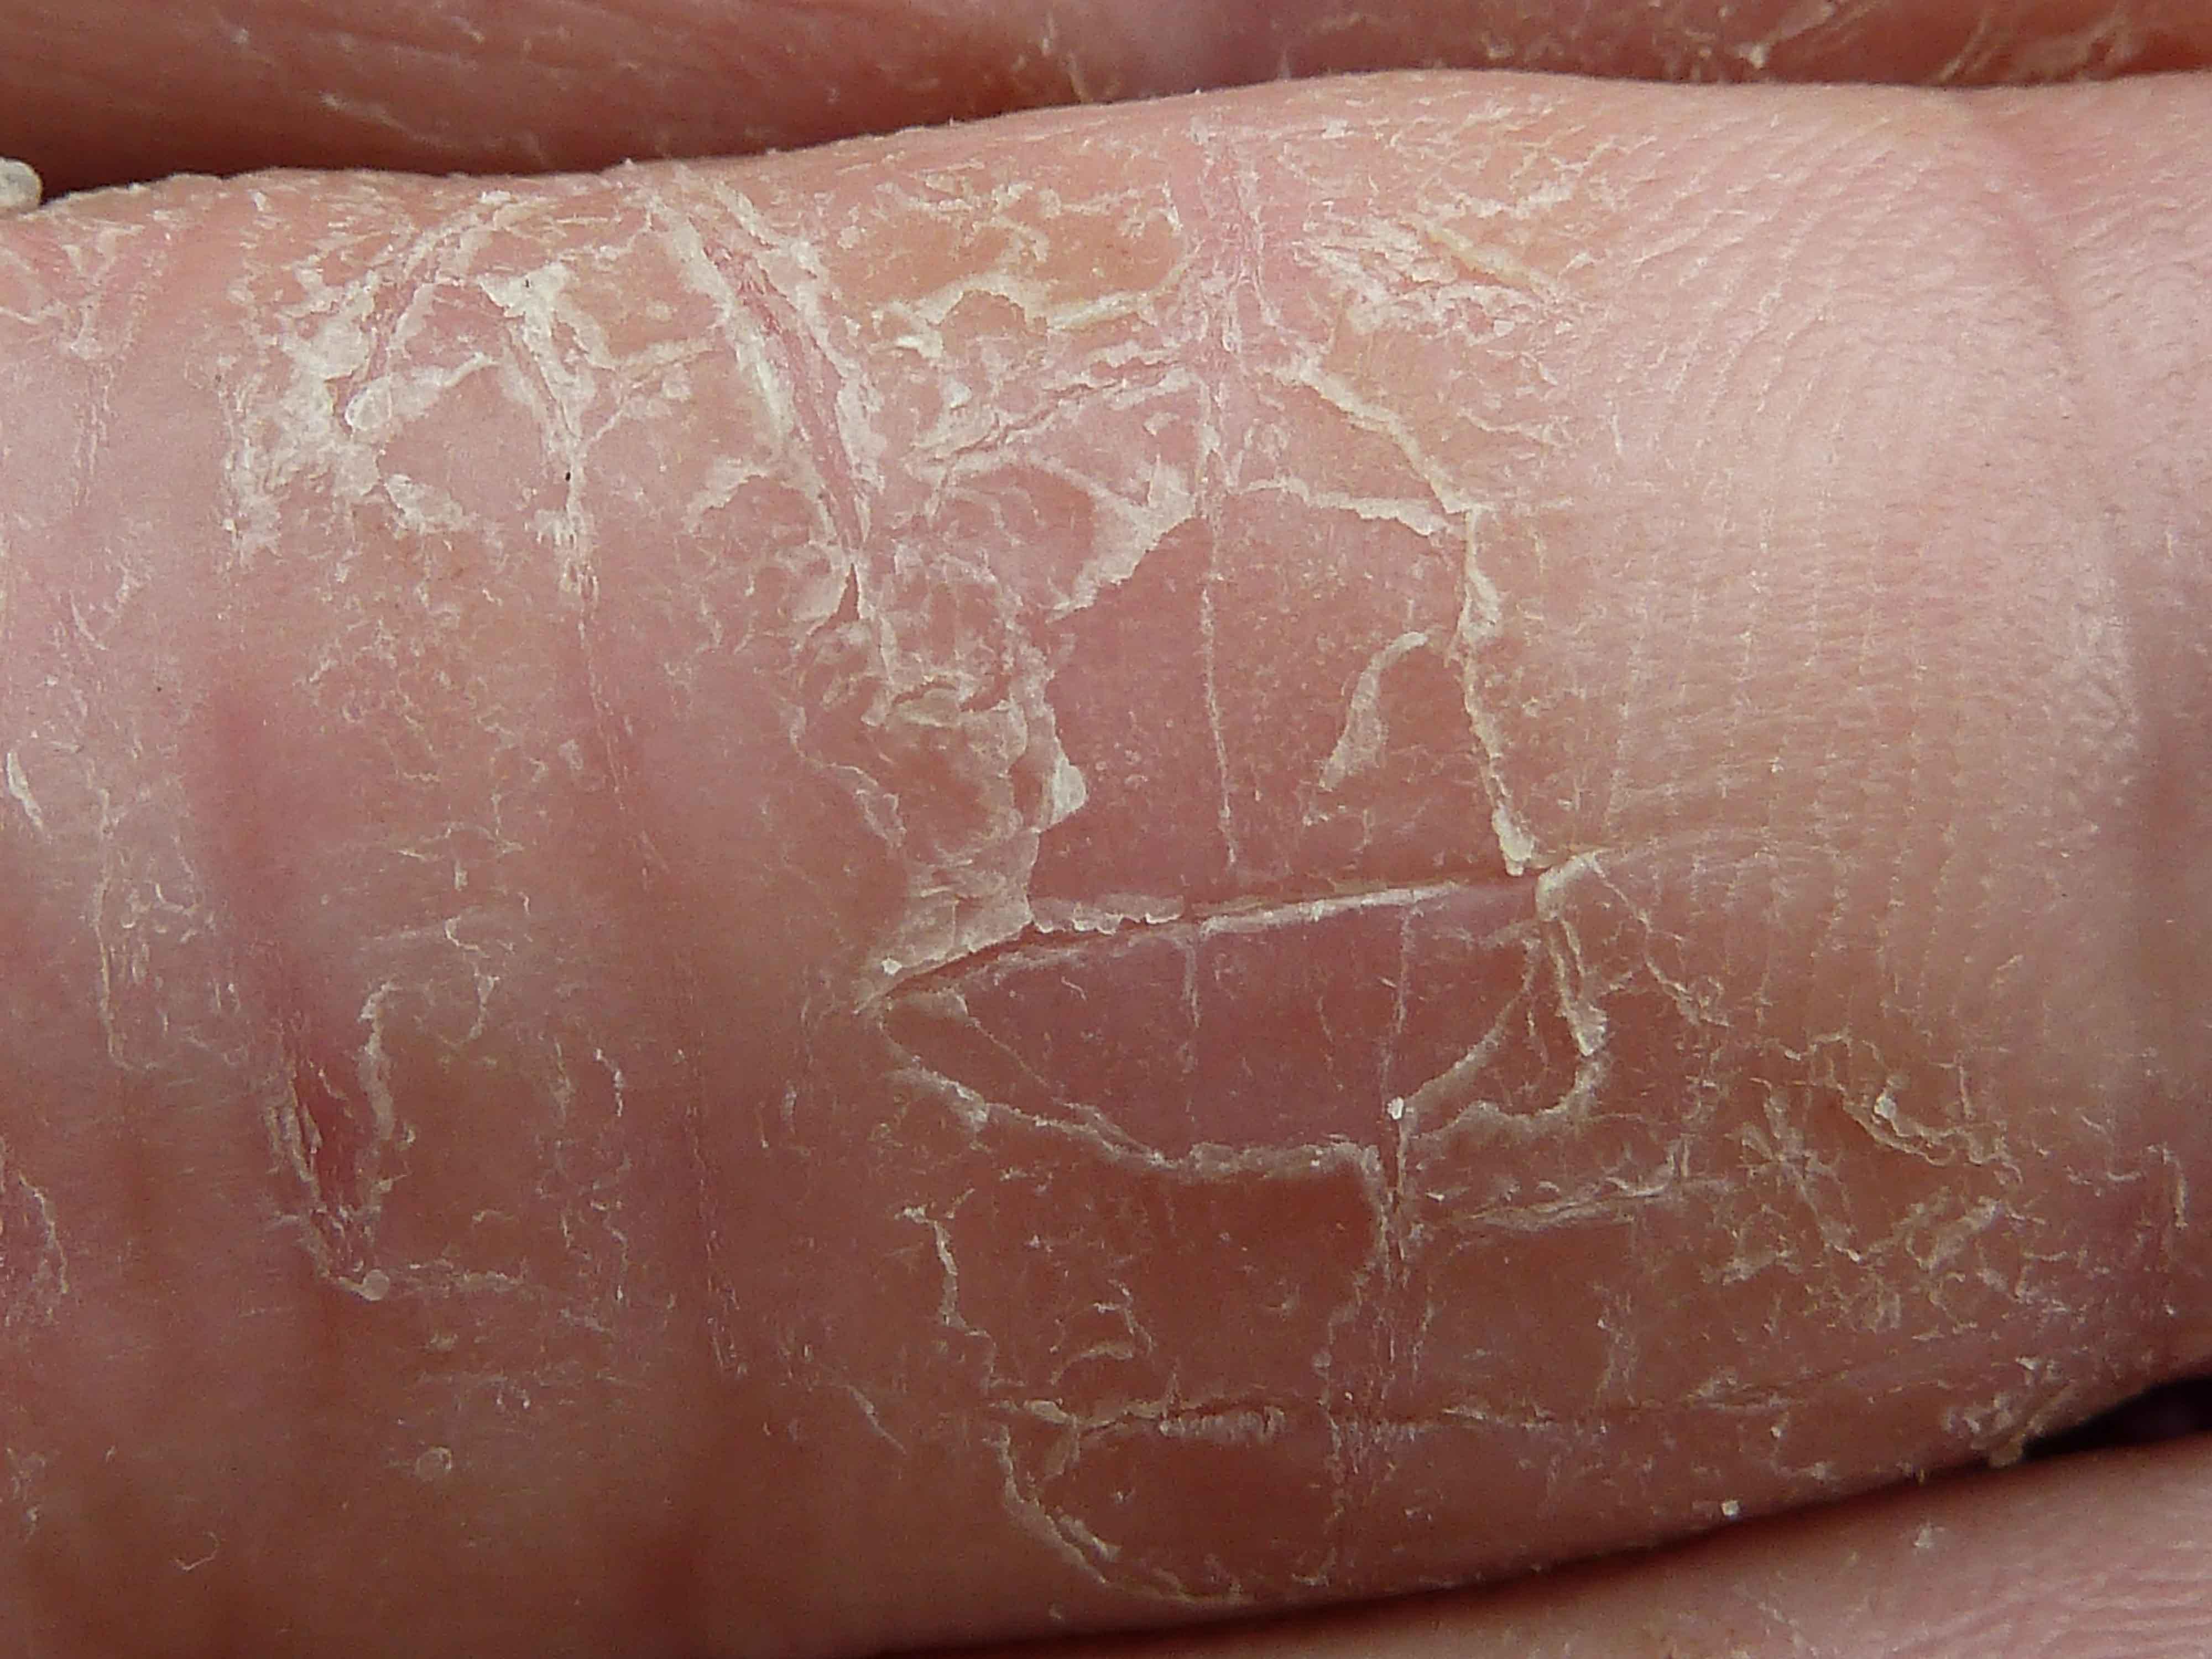 手指角化性湿疹图片